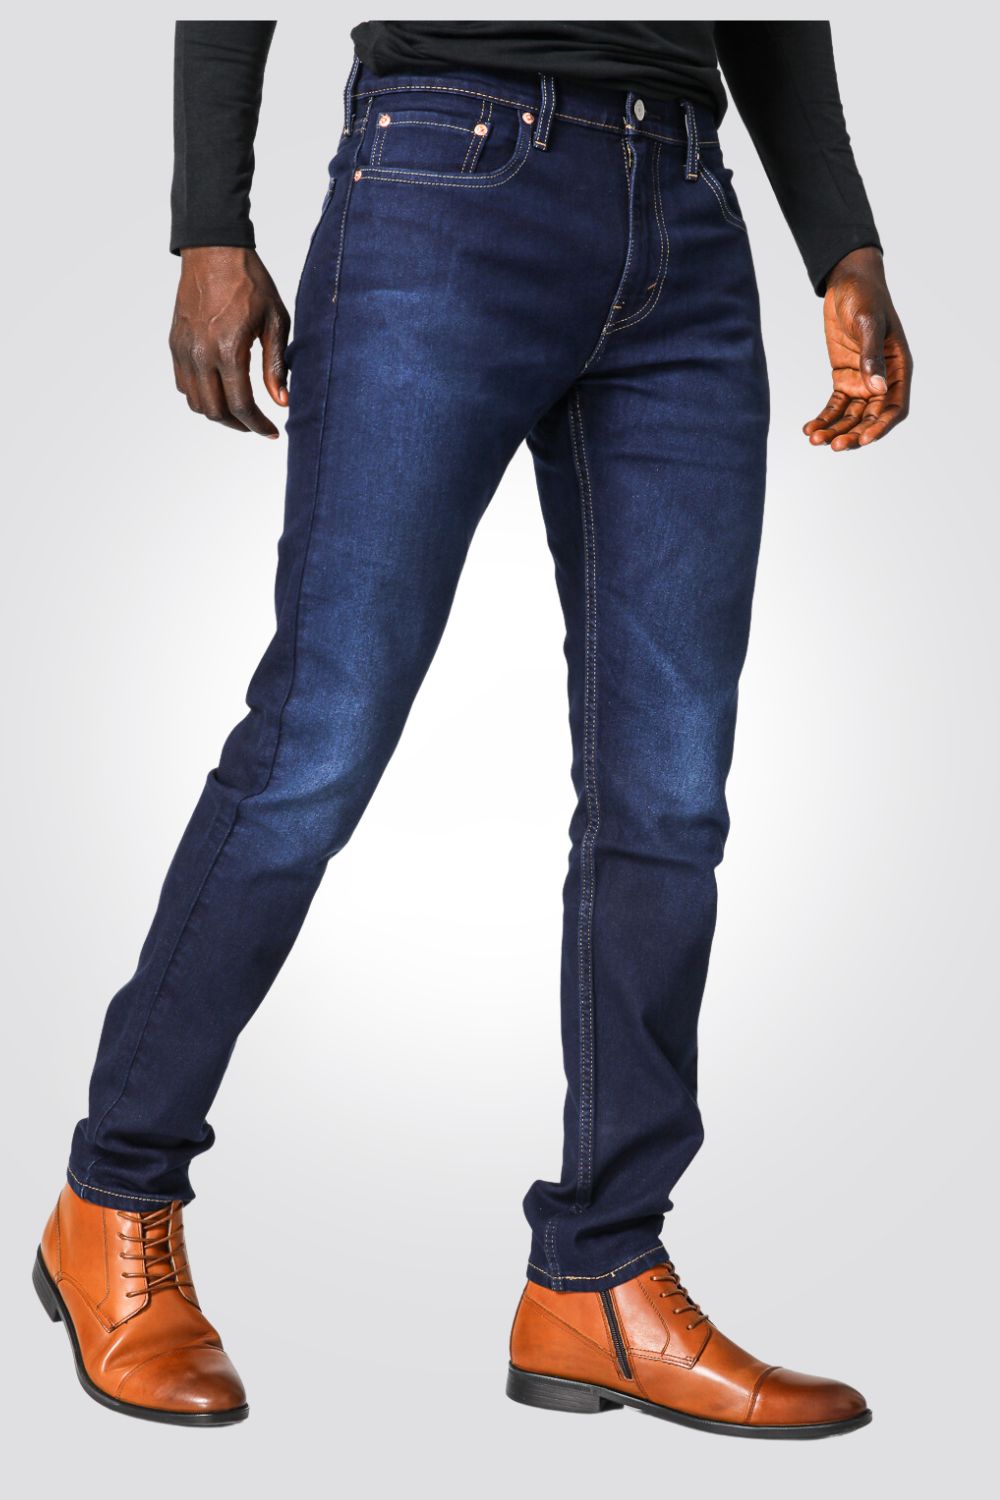 ג'ינס לגברים INDIGO-POCKETS בצבע כחול כהה